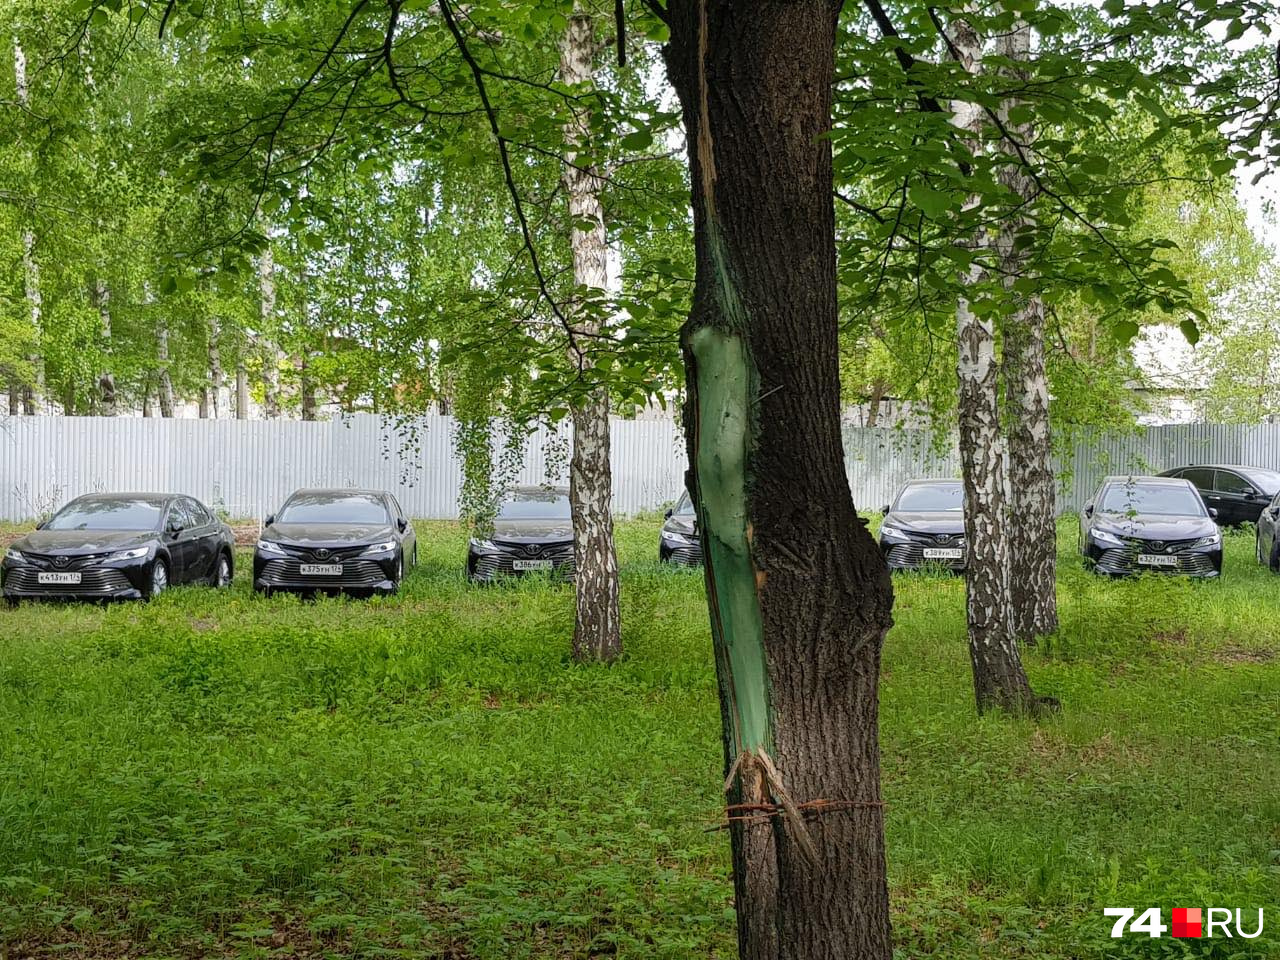 Пригнали машины из Магнитогорска, поставщик — автосалон из родного города бывшего губернатора